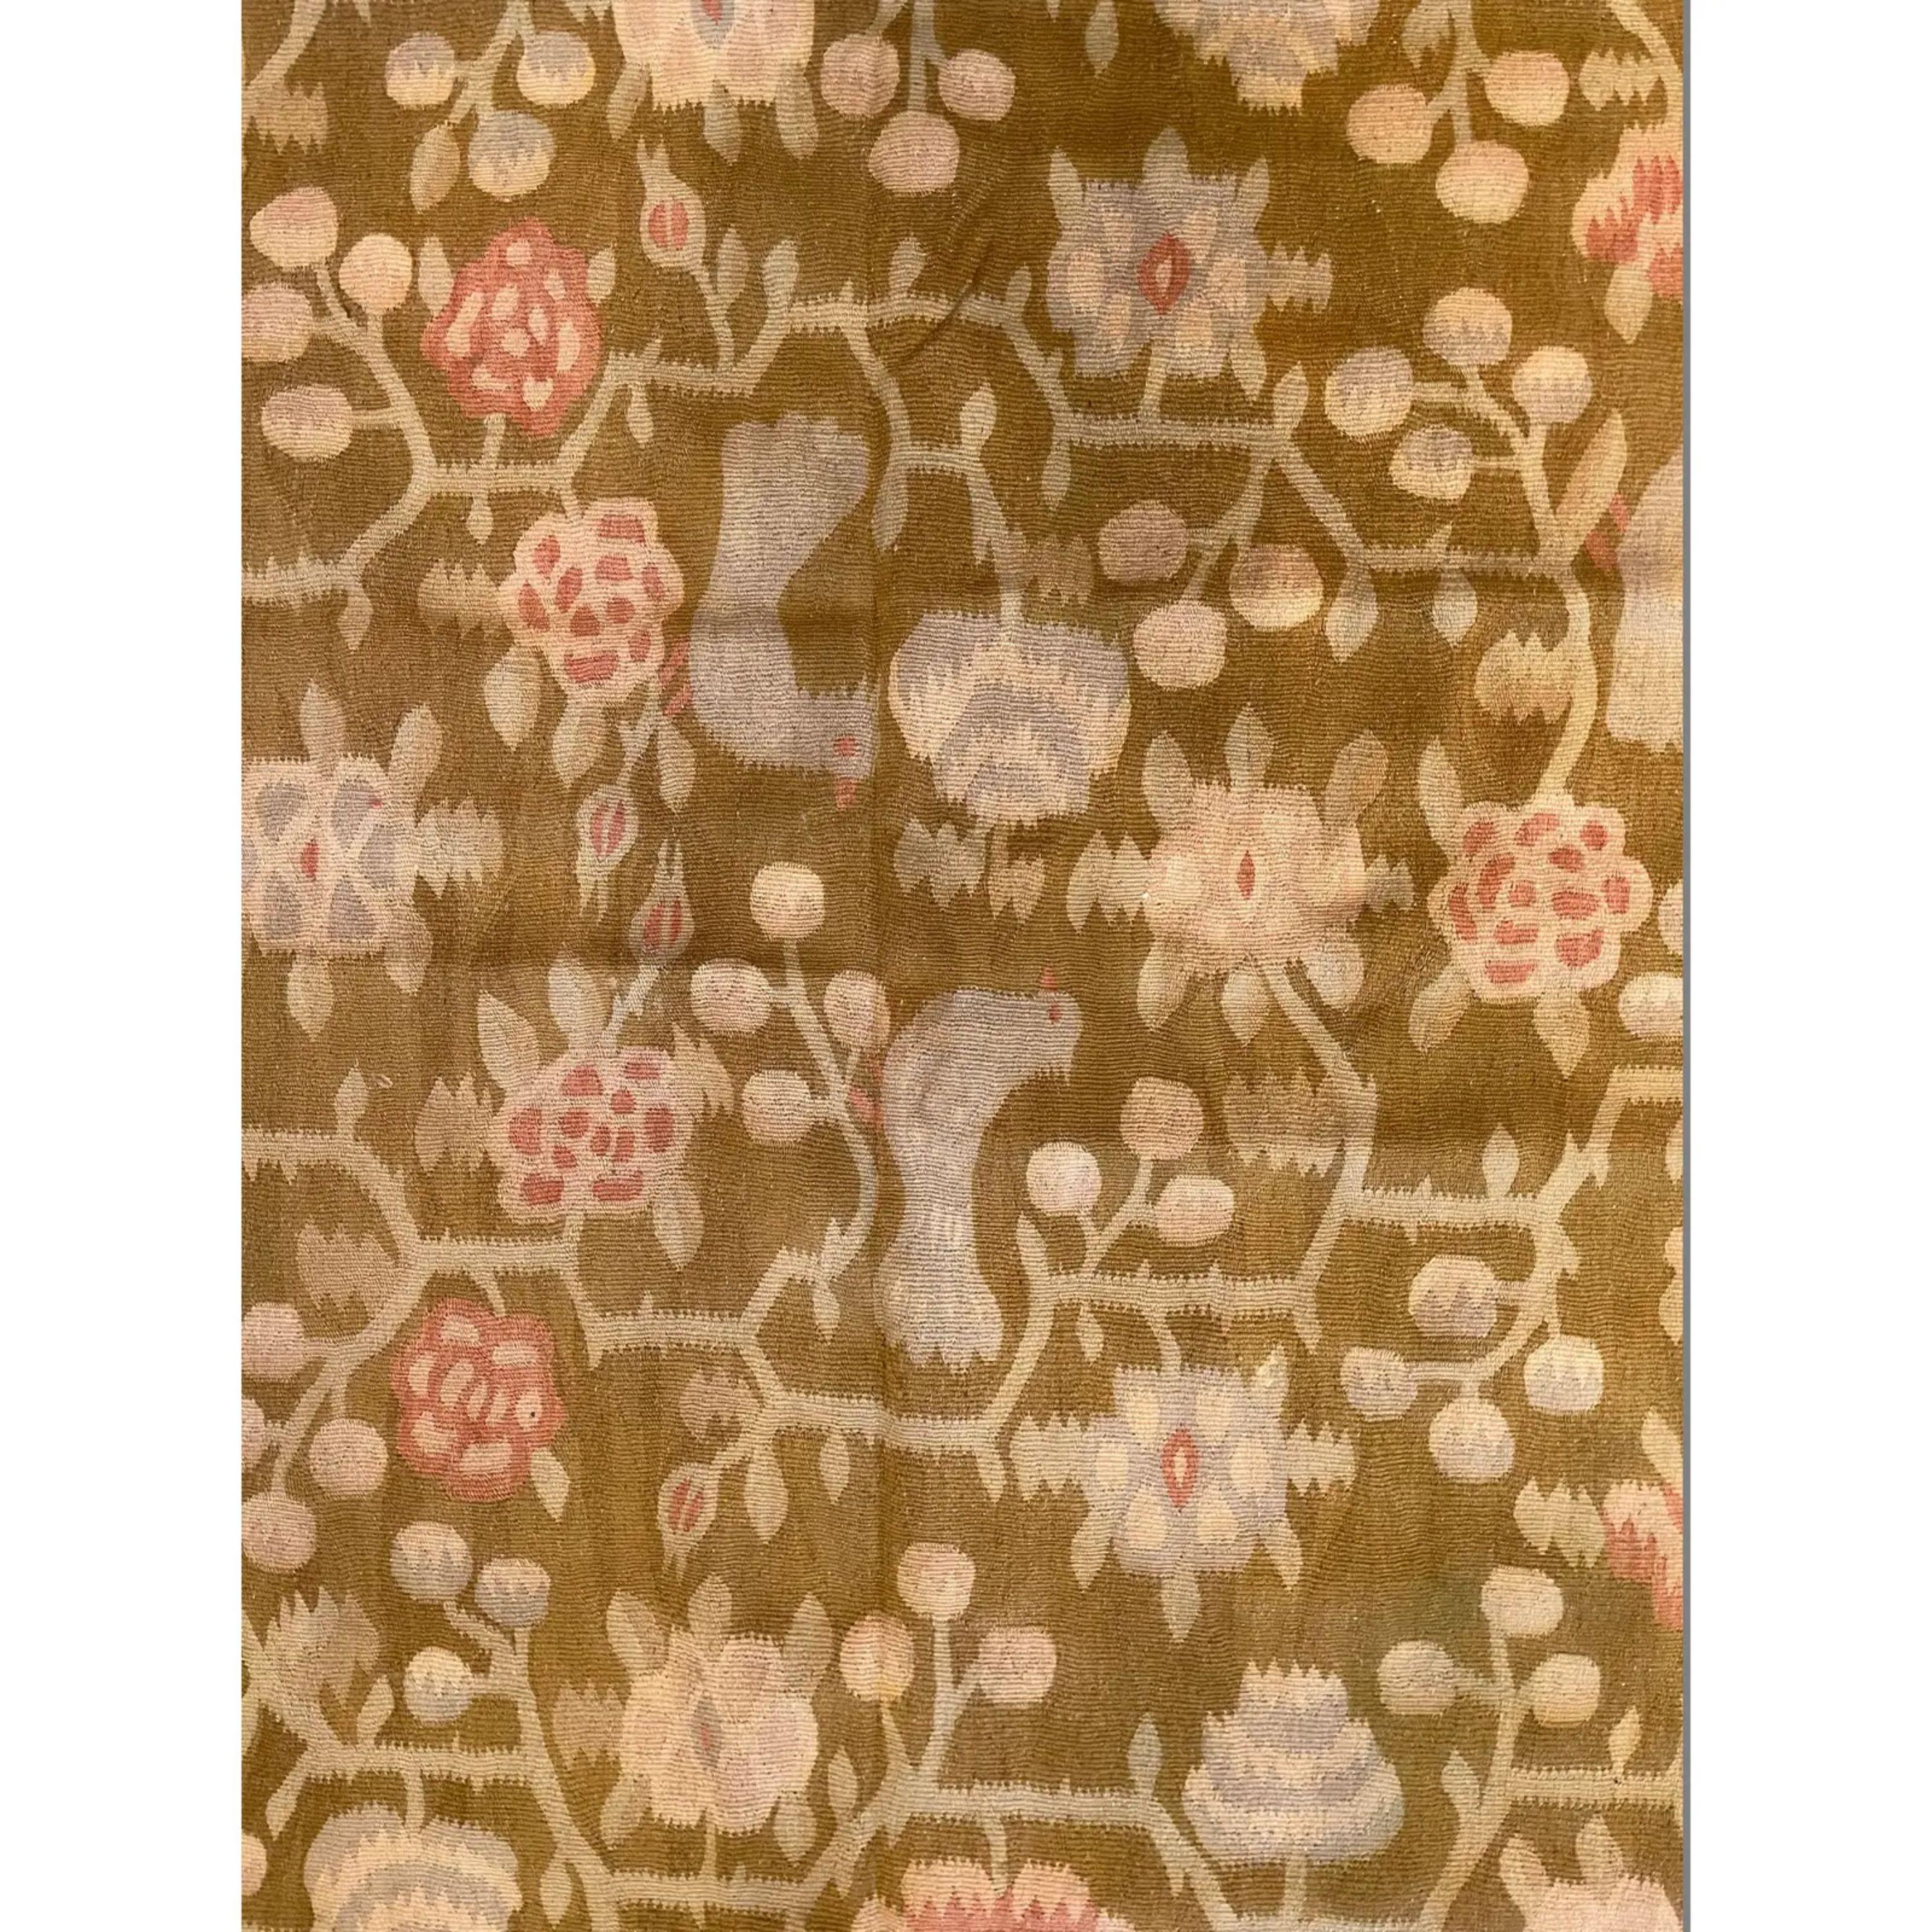 Antike bessarabische Teppiche/Kilims in Flor- und Gobelin-Webtechnik gehören zu den schönsten Teppichen, die in Europa hergestellt wurden. Viele der bessarabischen Kelims wurden um die Mitte bis zum Ende des 19. Jahrhunderts gewebt, einige stammen